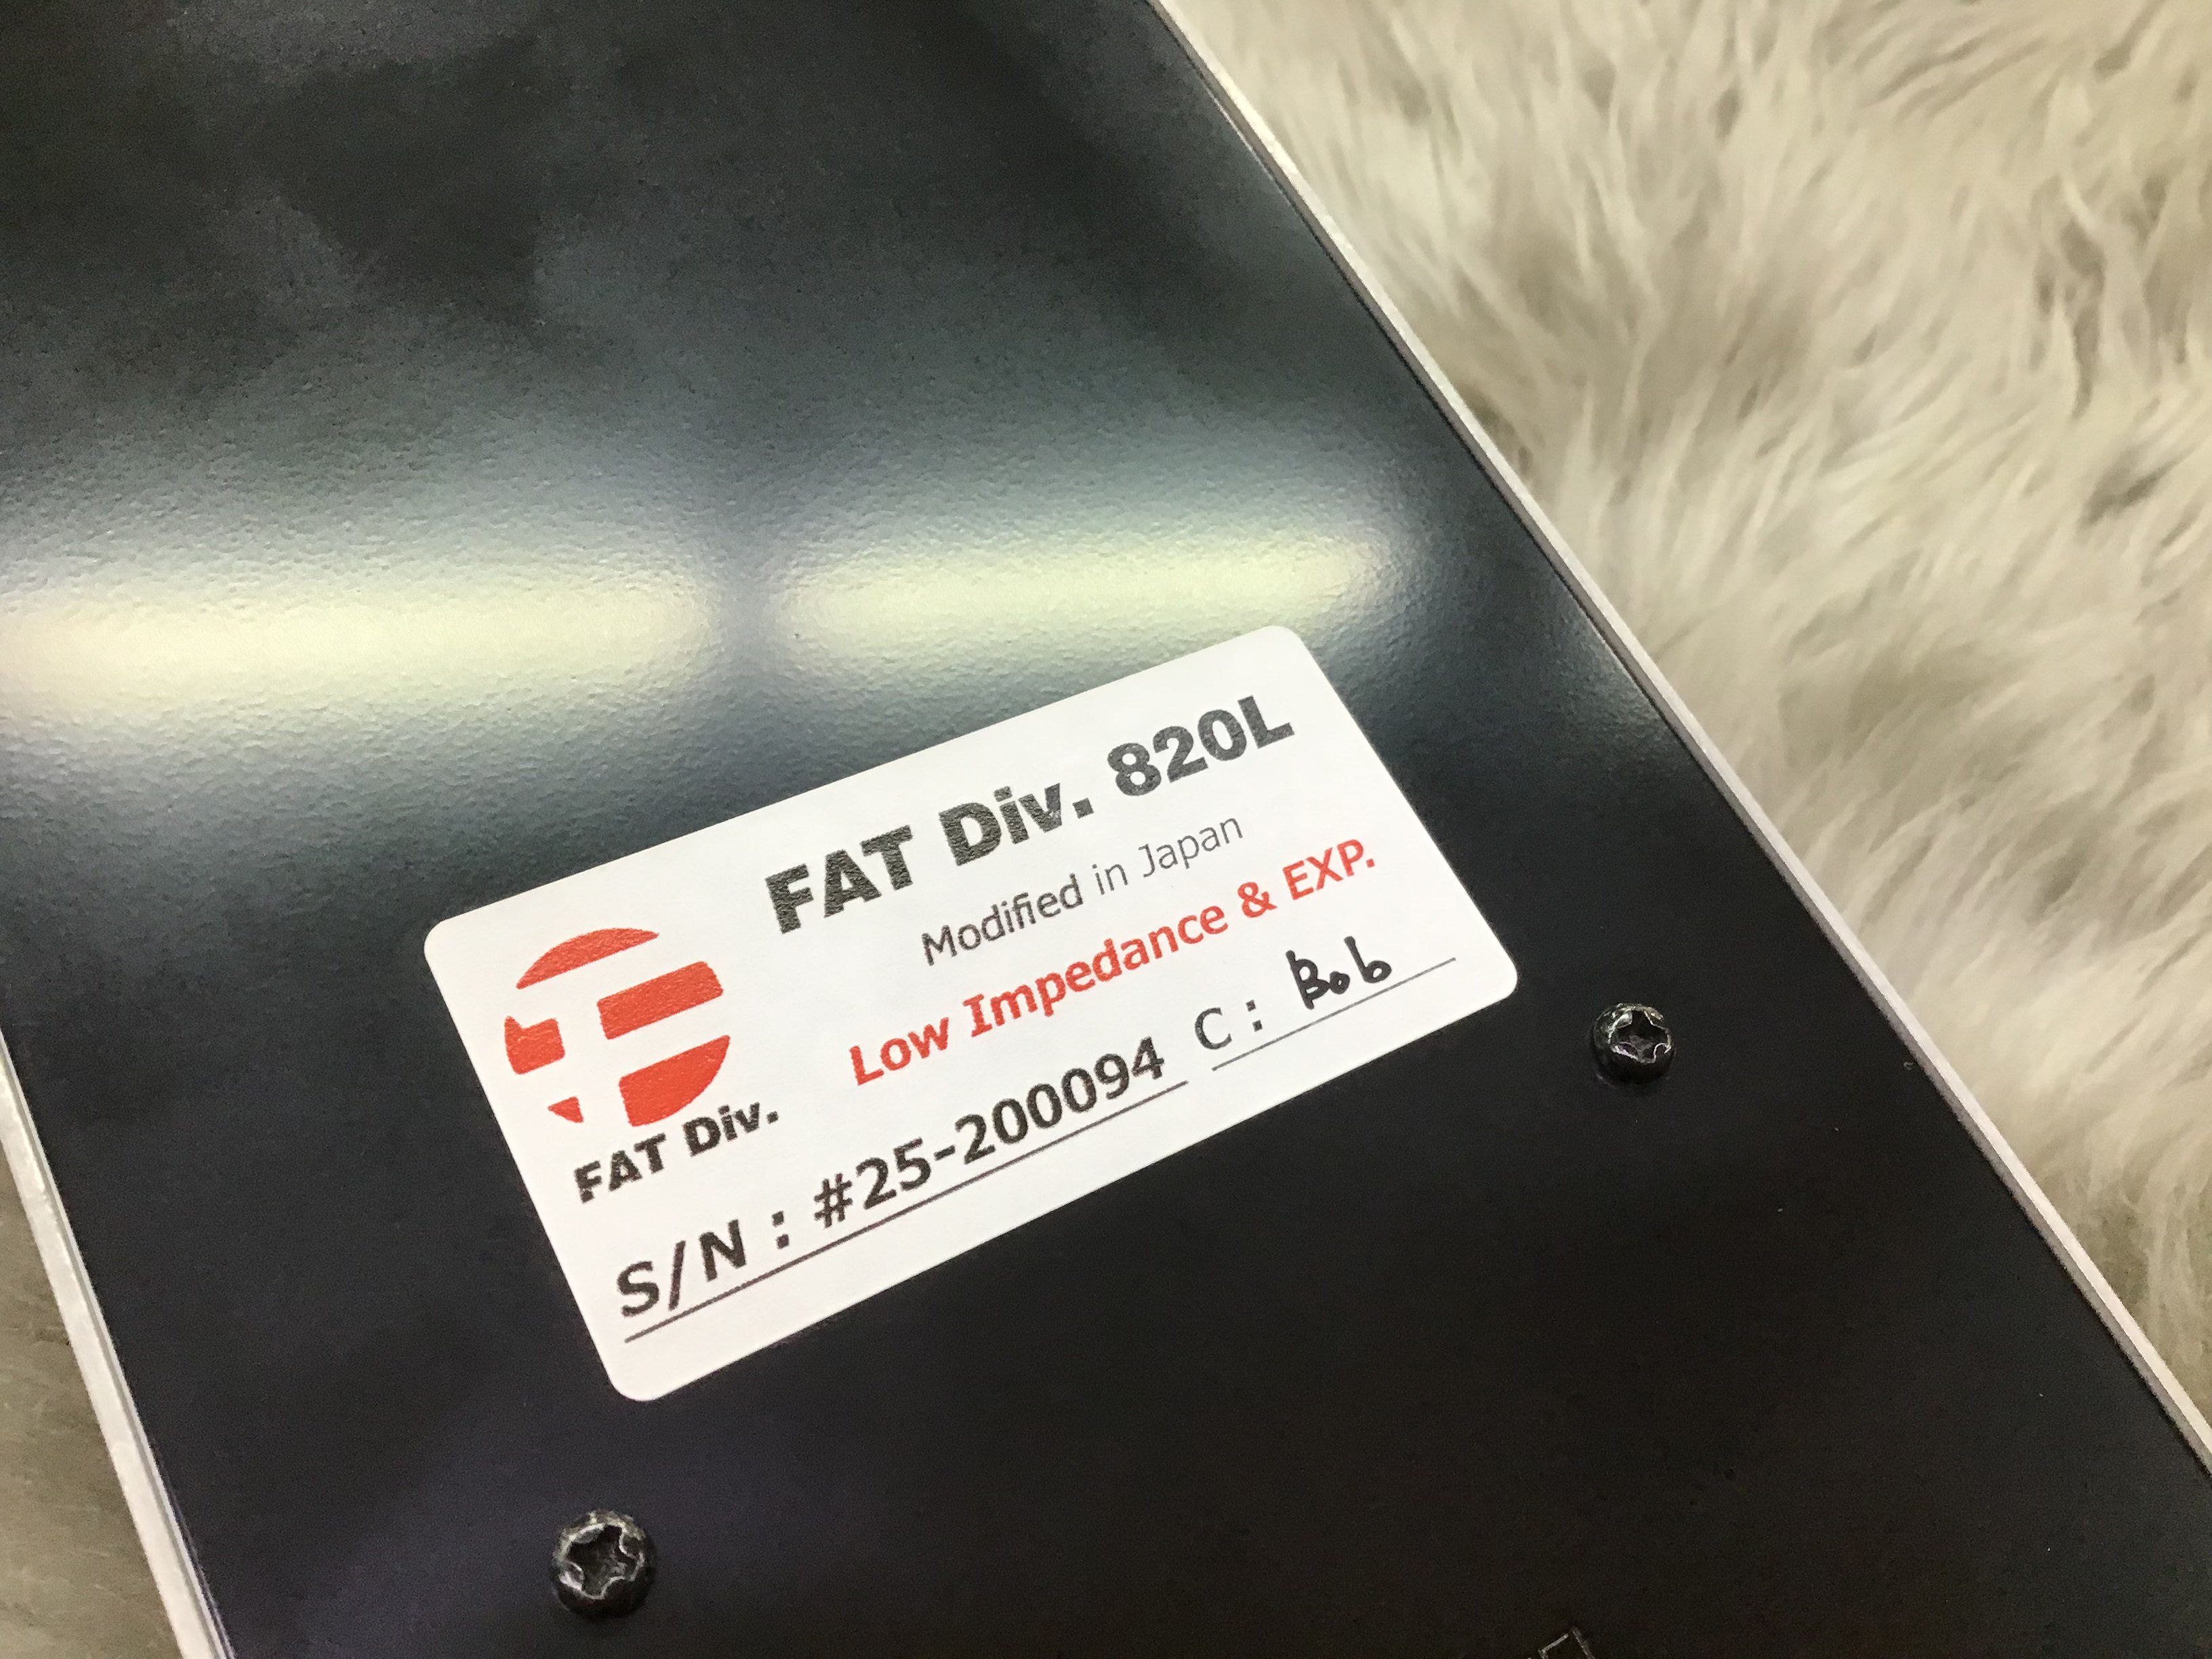 【日本未発売】 FAT Div. 820L ボリュームペダル エフェクター - parclamu.co.jp